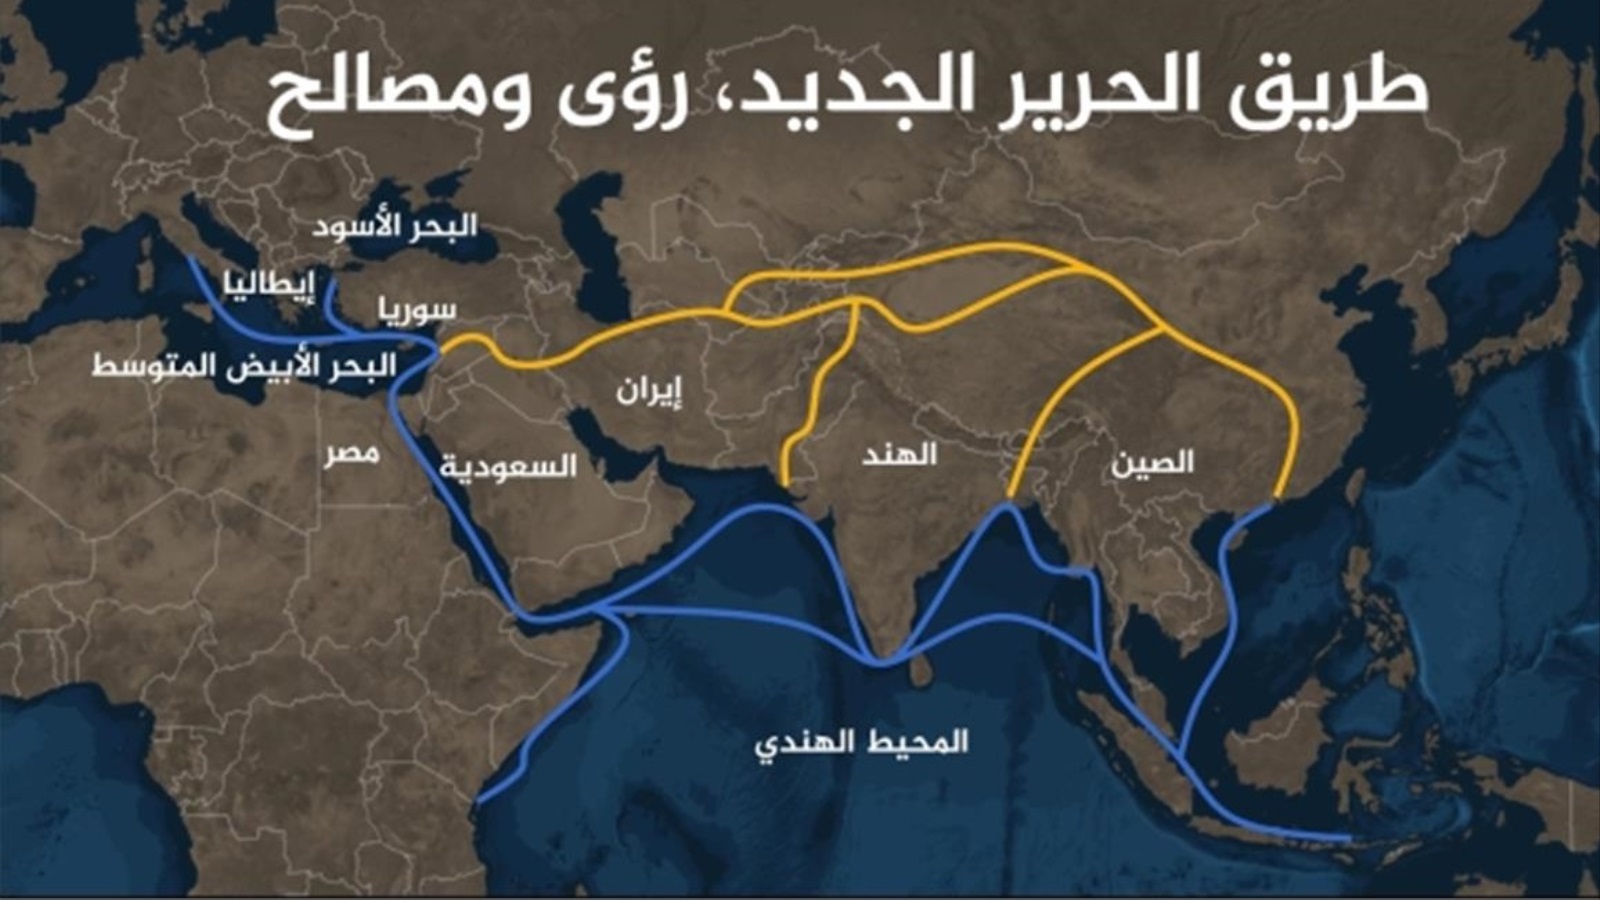 ‪خريطة توضح بعض مسارات طريق الحرير الجديد (الجزيرة)‬ خريطة توضح بعض مسارات طريق الحرير الجديد (الجزيرة)